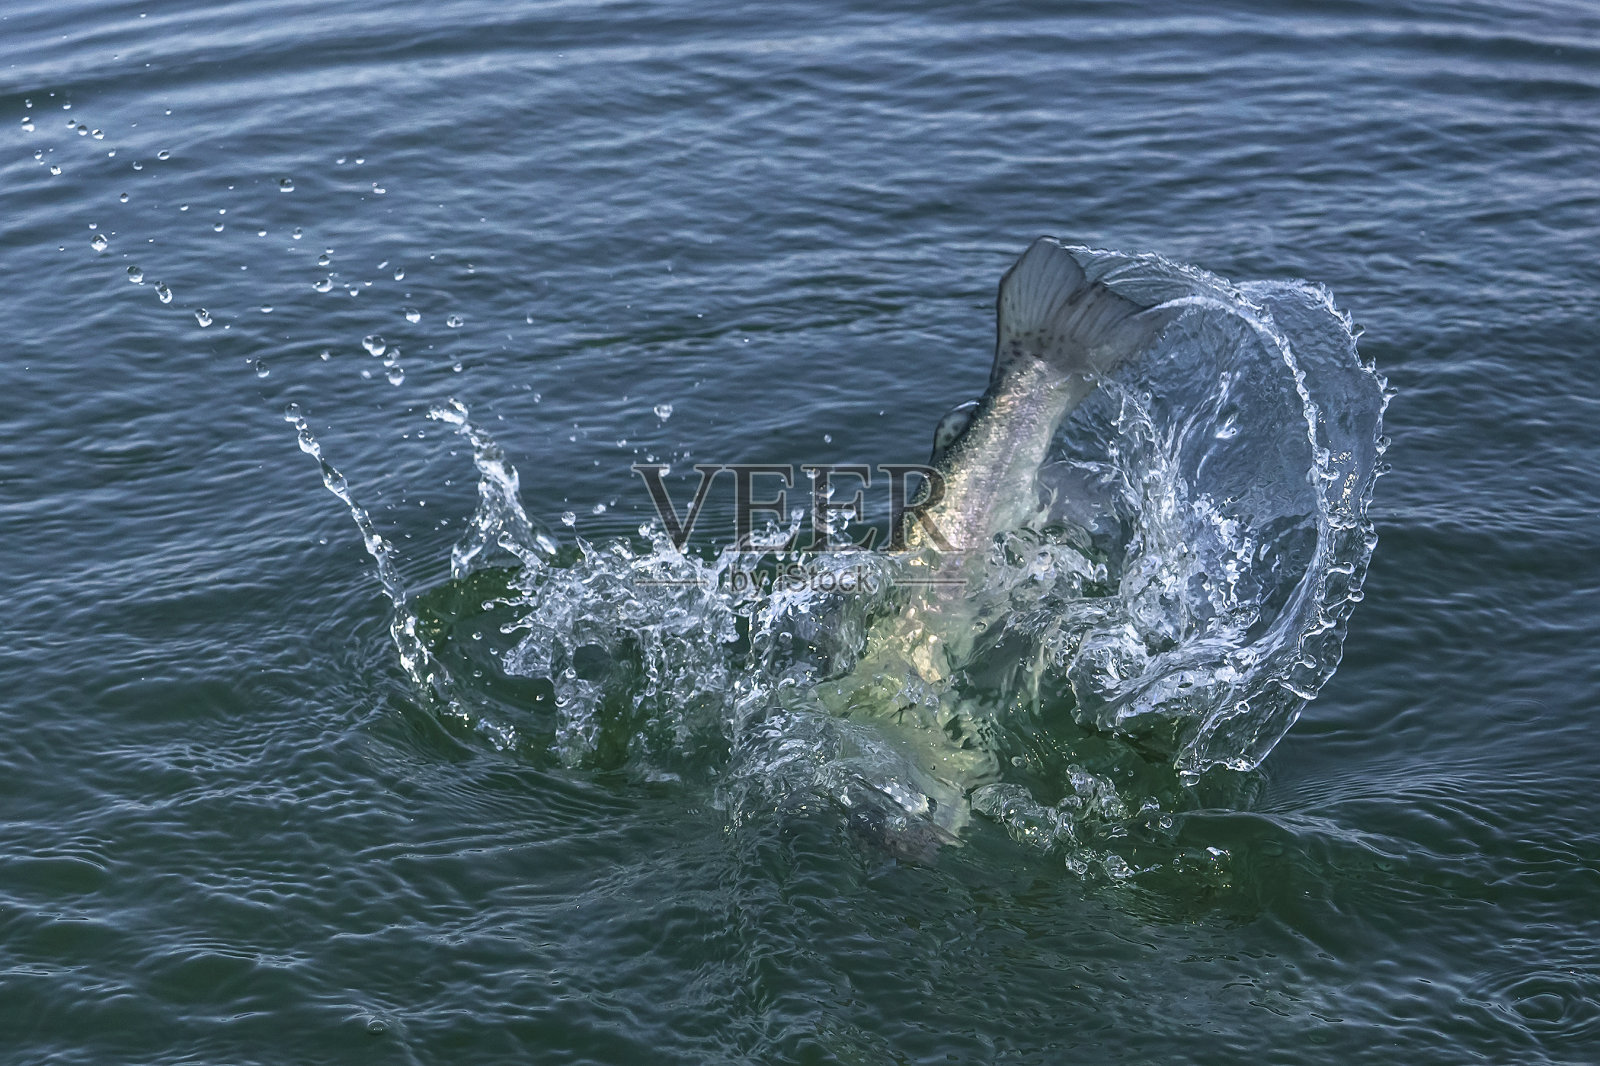 鱼尾在水中跳跃后溅起水花。捕鱼鳟鱼及鲑鱼照片摄影图片